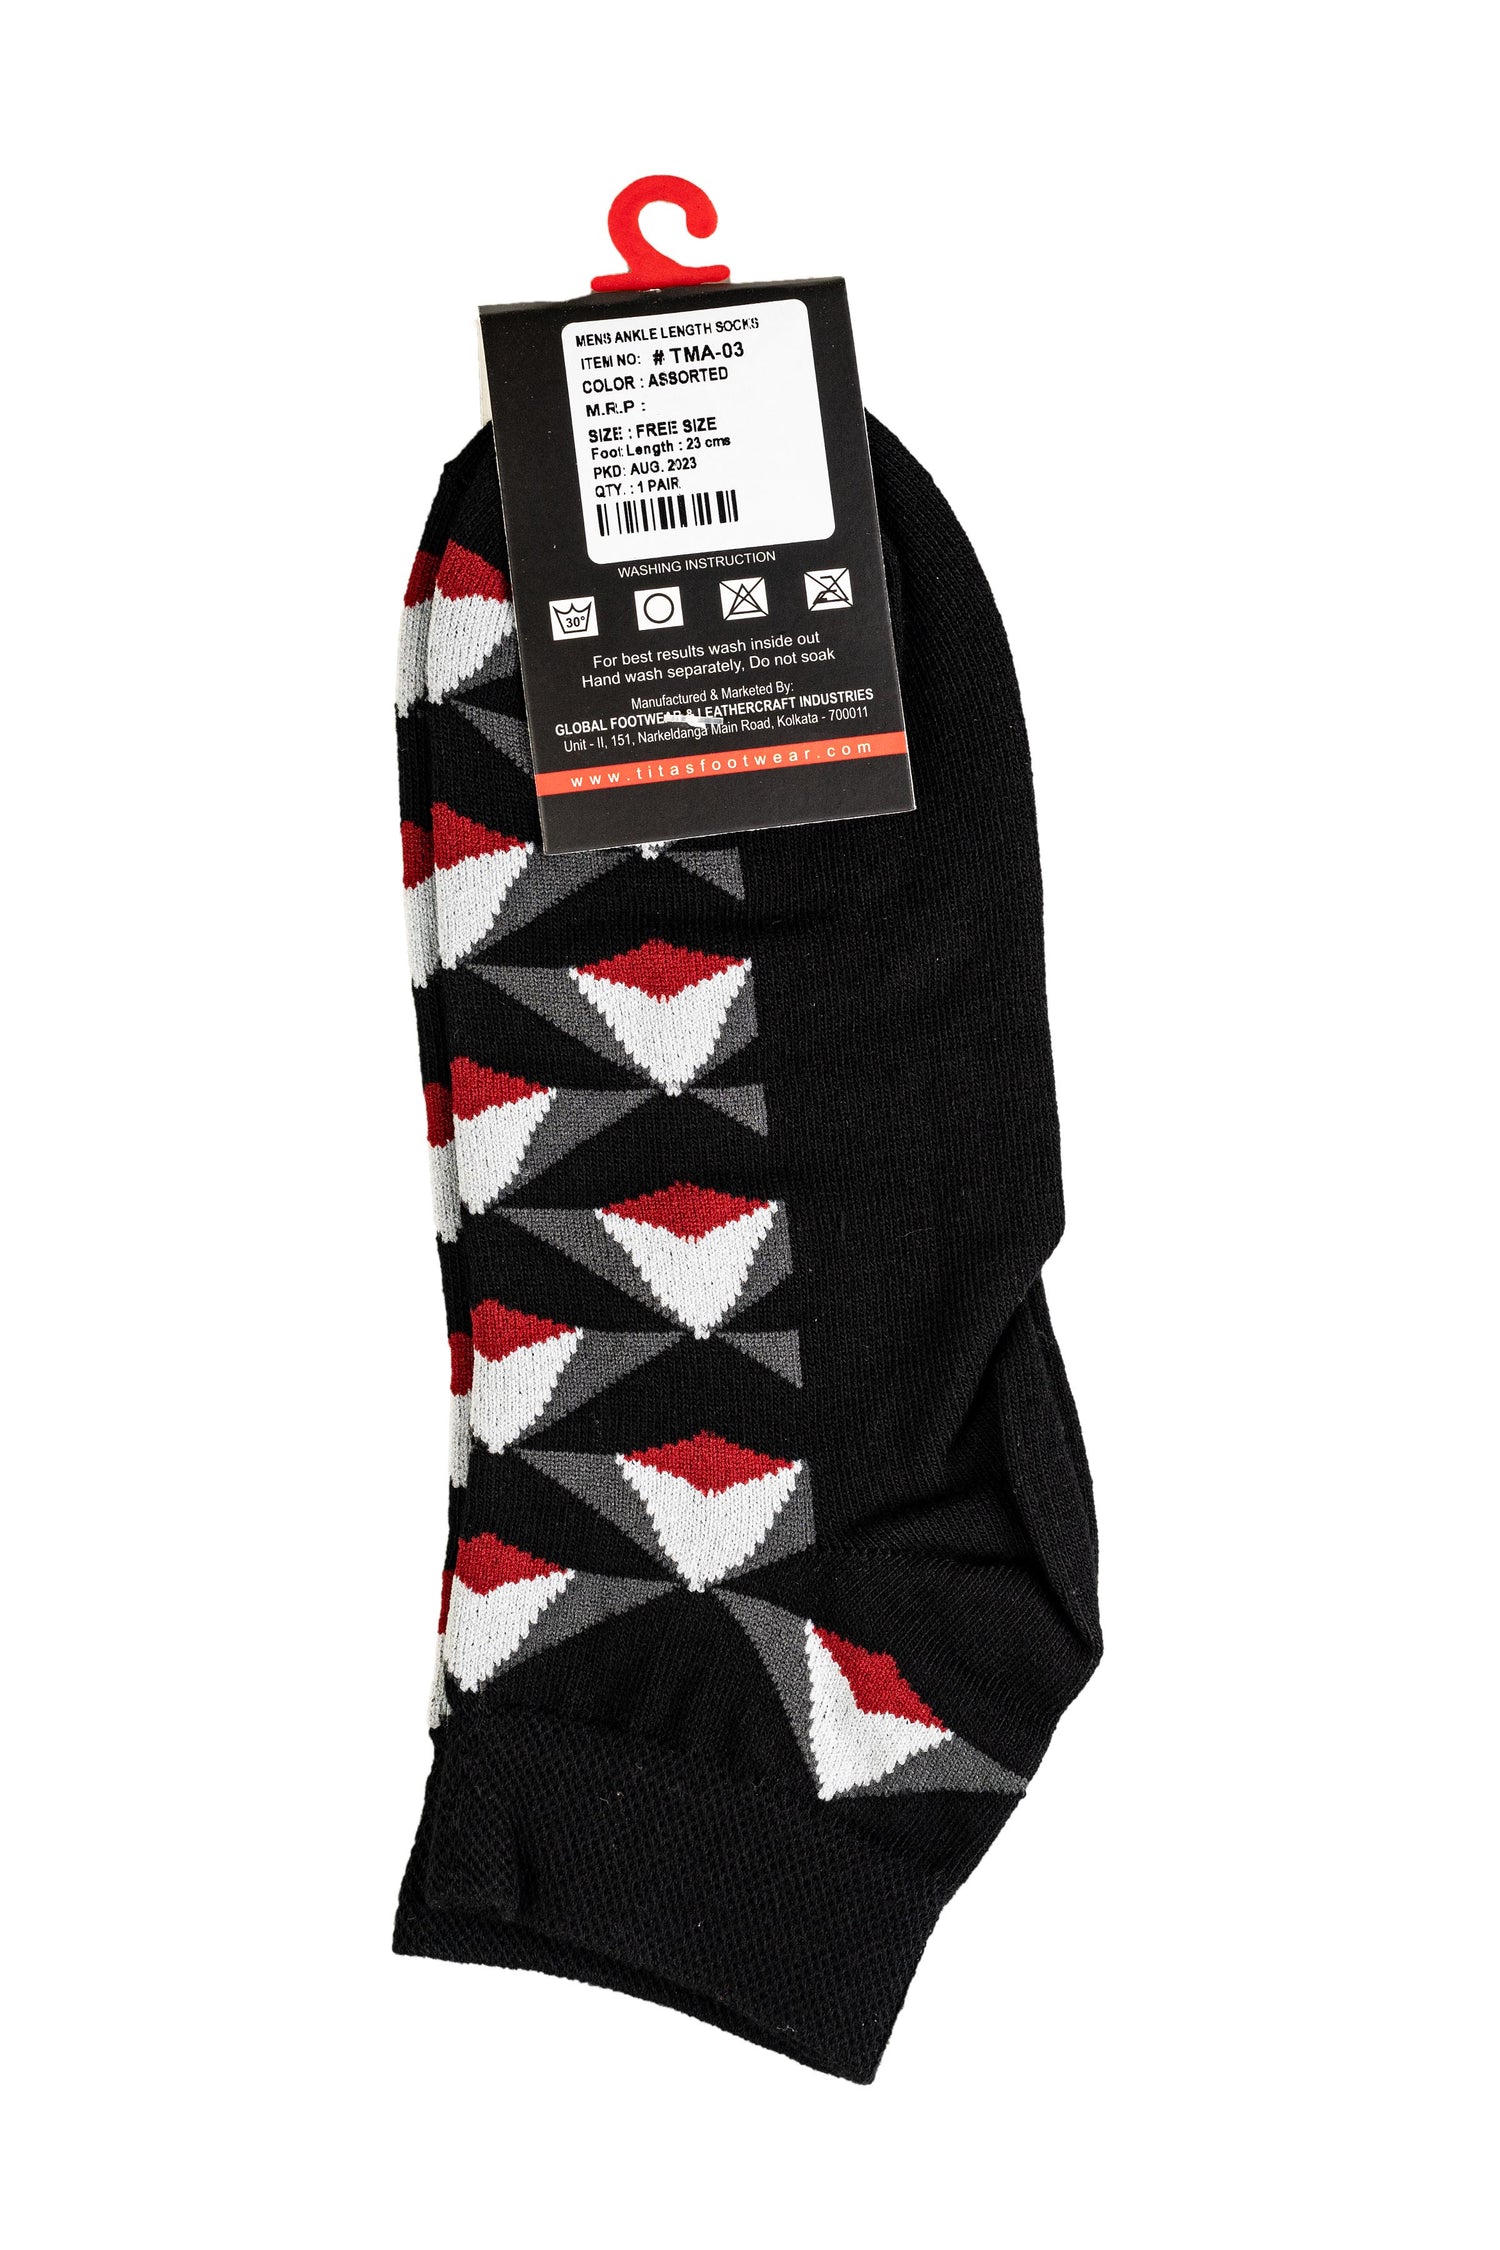 Titas Gents Comfort Blend Assorted Ankle Length Socks